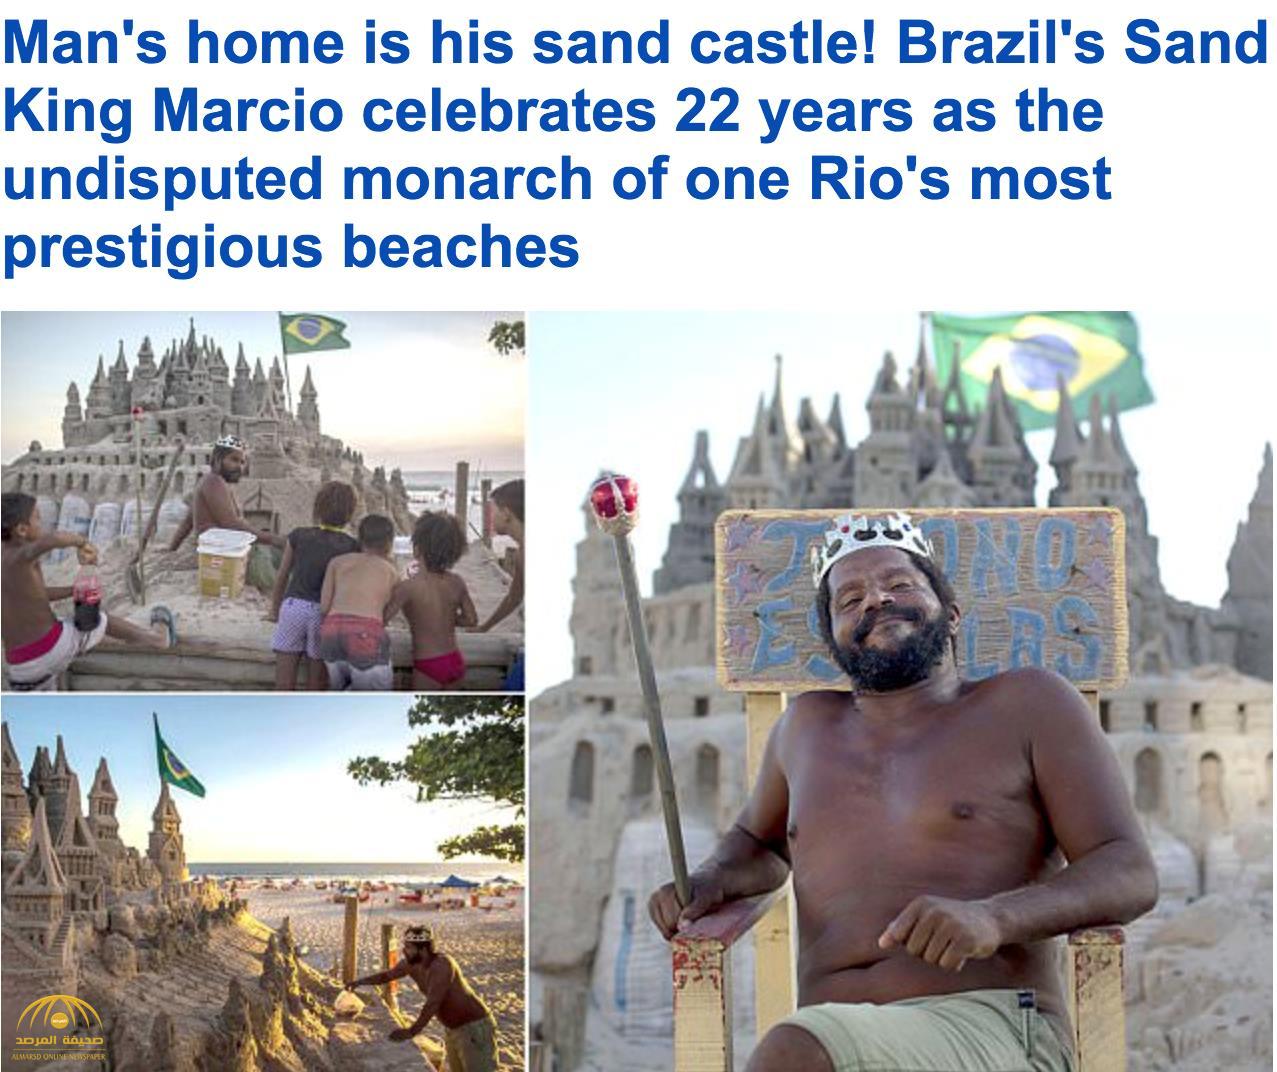 شاهد بالفيديو: "برازيلي" يحتفل بمرور 22 عامًا بصفته "ملك بلا منازع" داخل قلعته الرملية على شواطئ "ريو دي جانيرو"